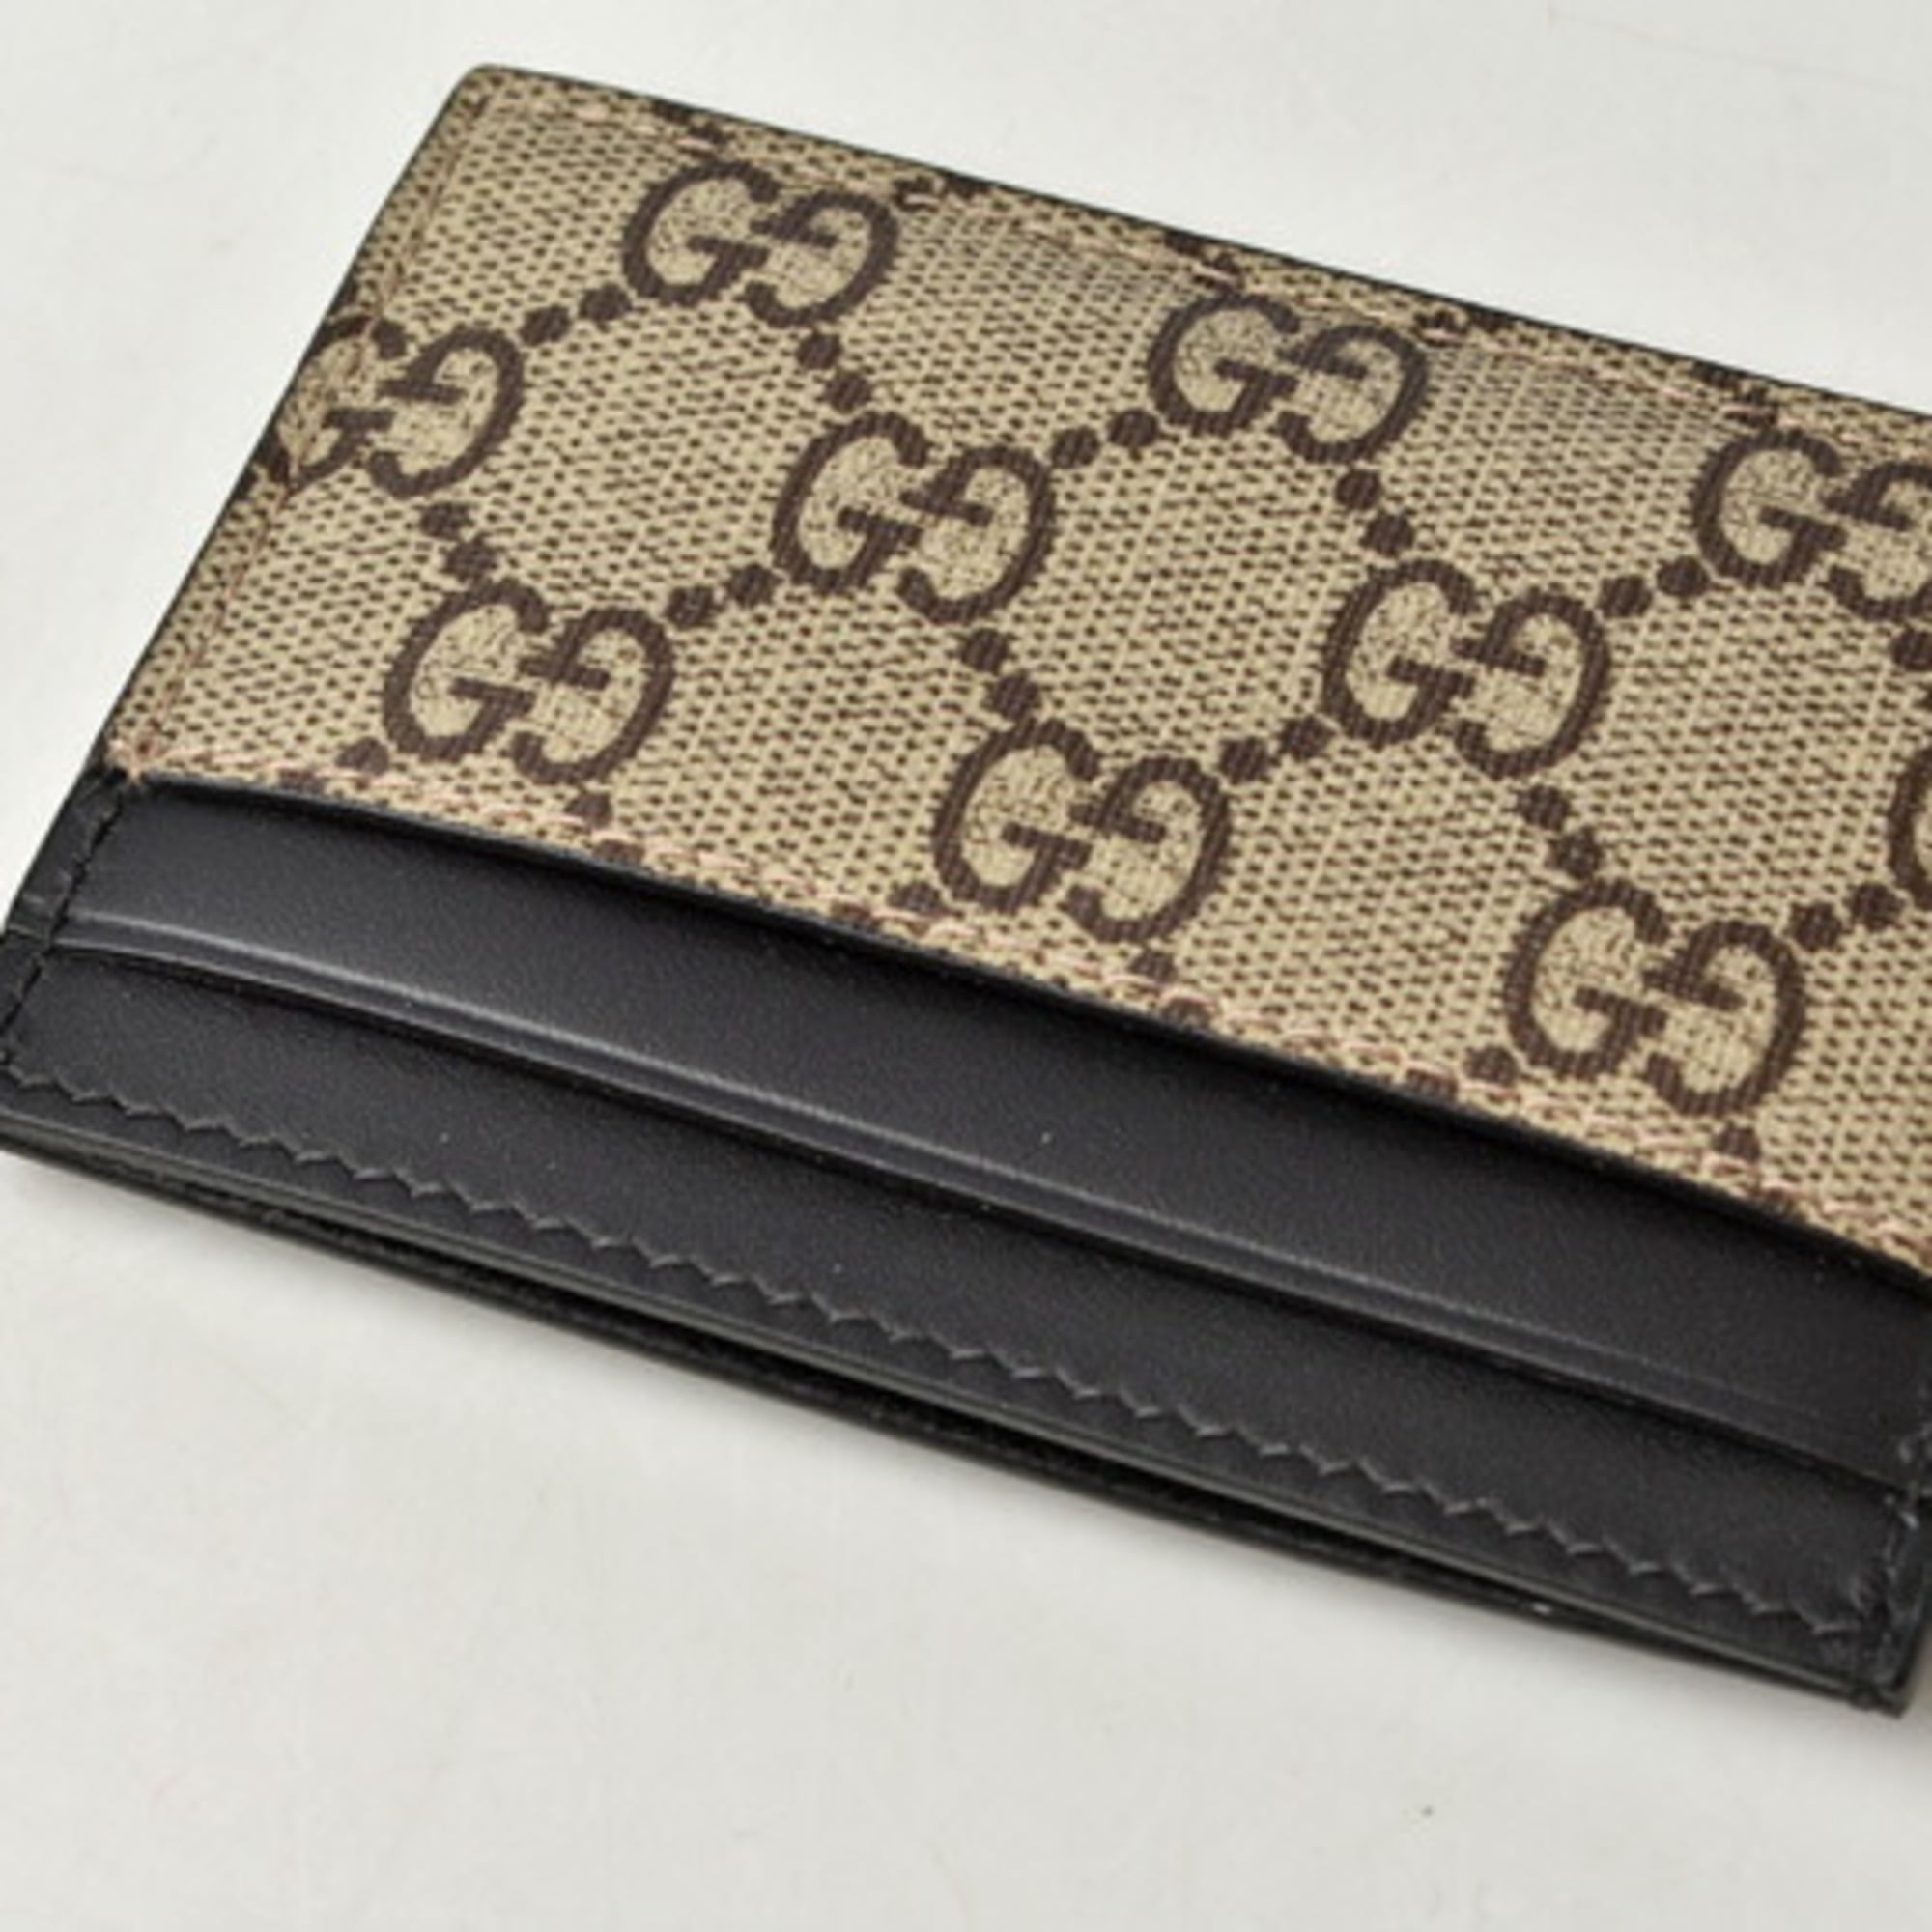 Gucci Business Card Holder Guccisima 251727 Black Leather Case Men's  Women's GUCCI